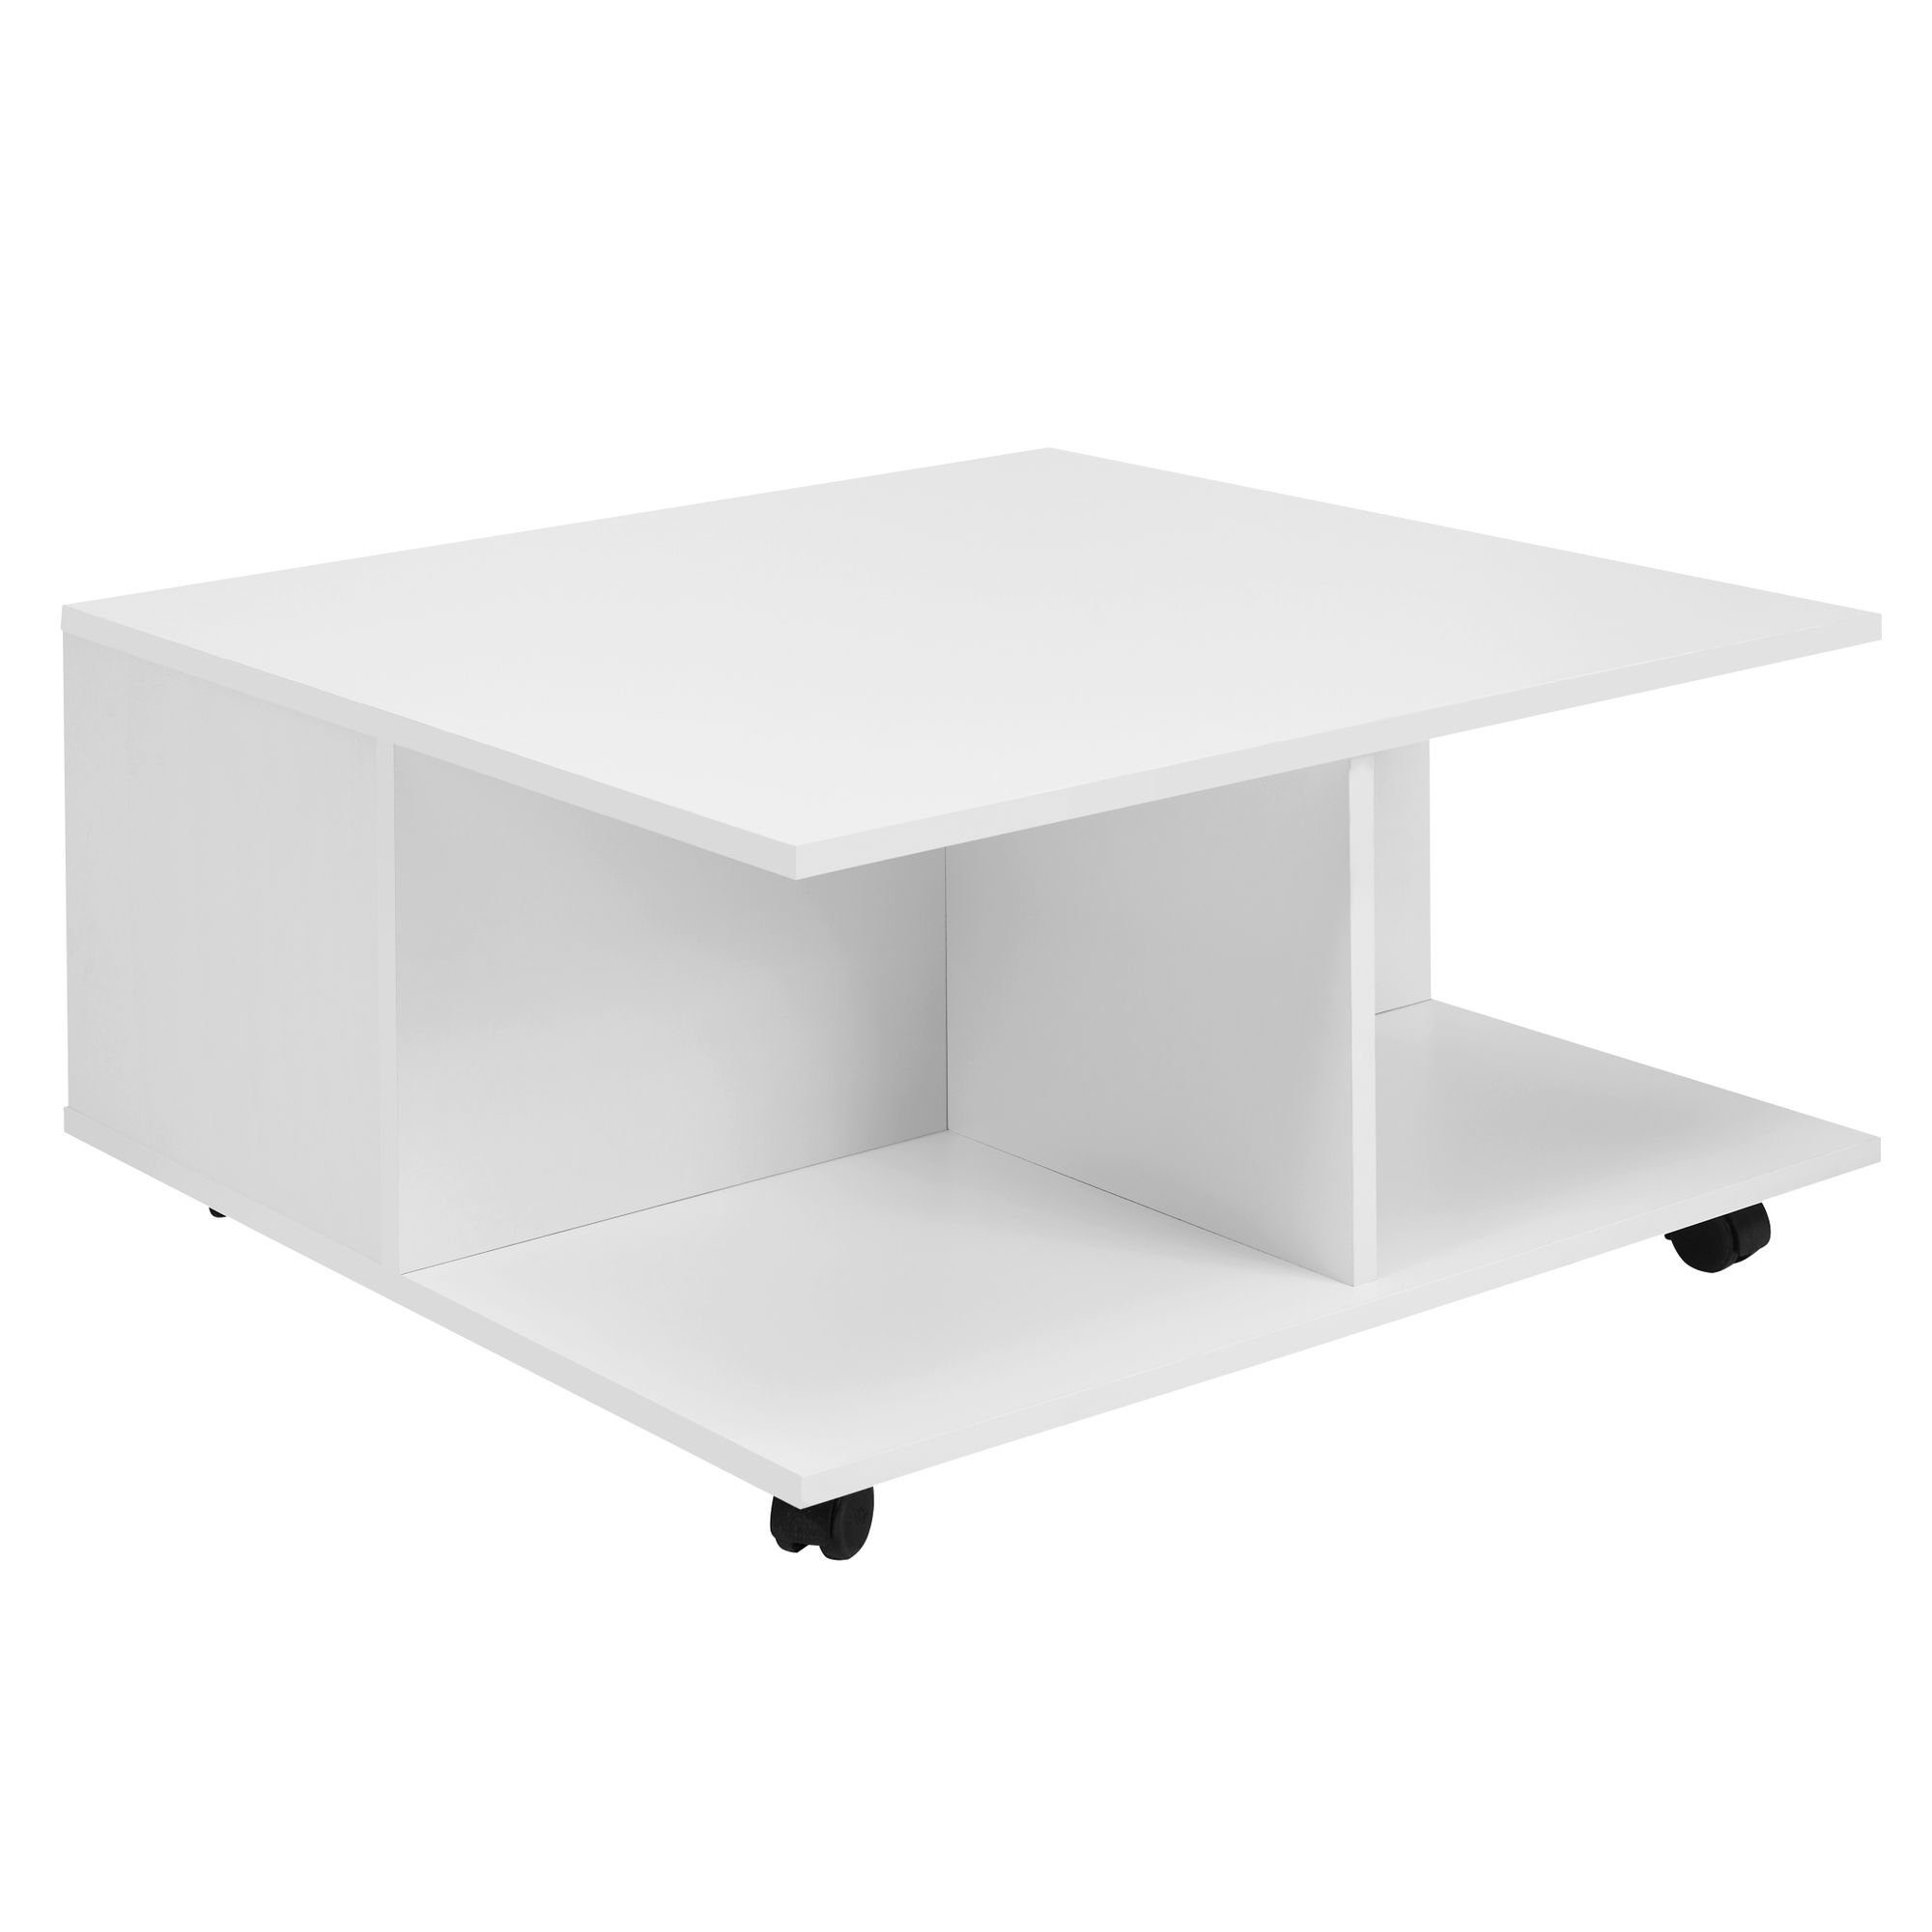 möbelando Couchtisch Design Couchtisch cm 2 Weiß, mit  Tisch Sofatisch Wohnzimmertisch, Design mit Couchtisch Fächern Wohnzimmertisch Weiß, 70x70 2 Rollen, cm 70x70 Schubladen, mit